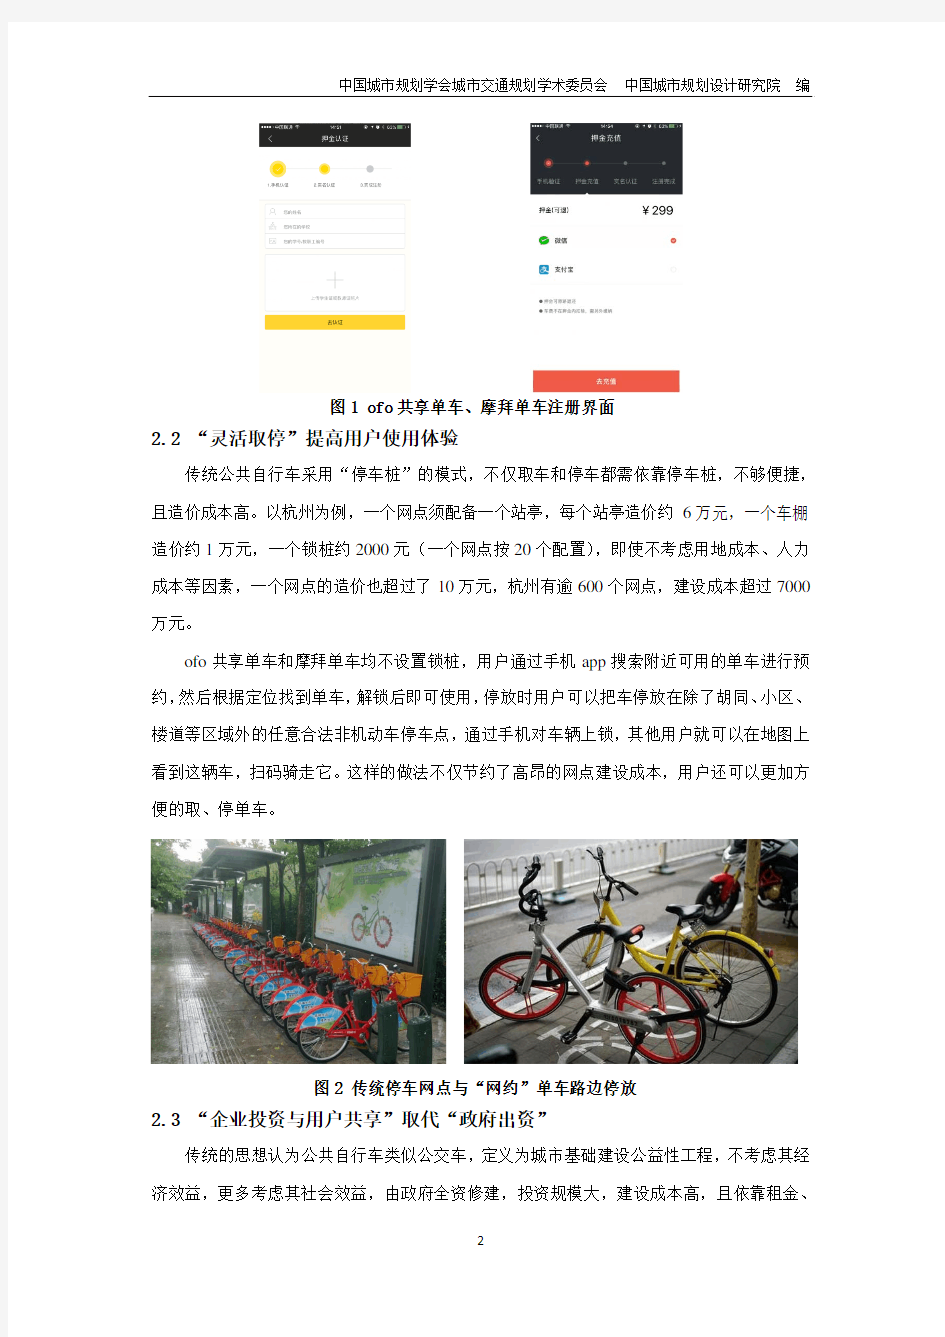 基于经济效益浅析城市公共自行车发展